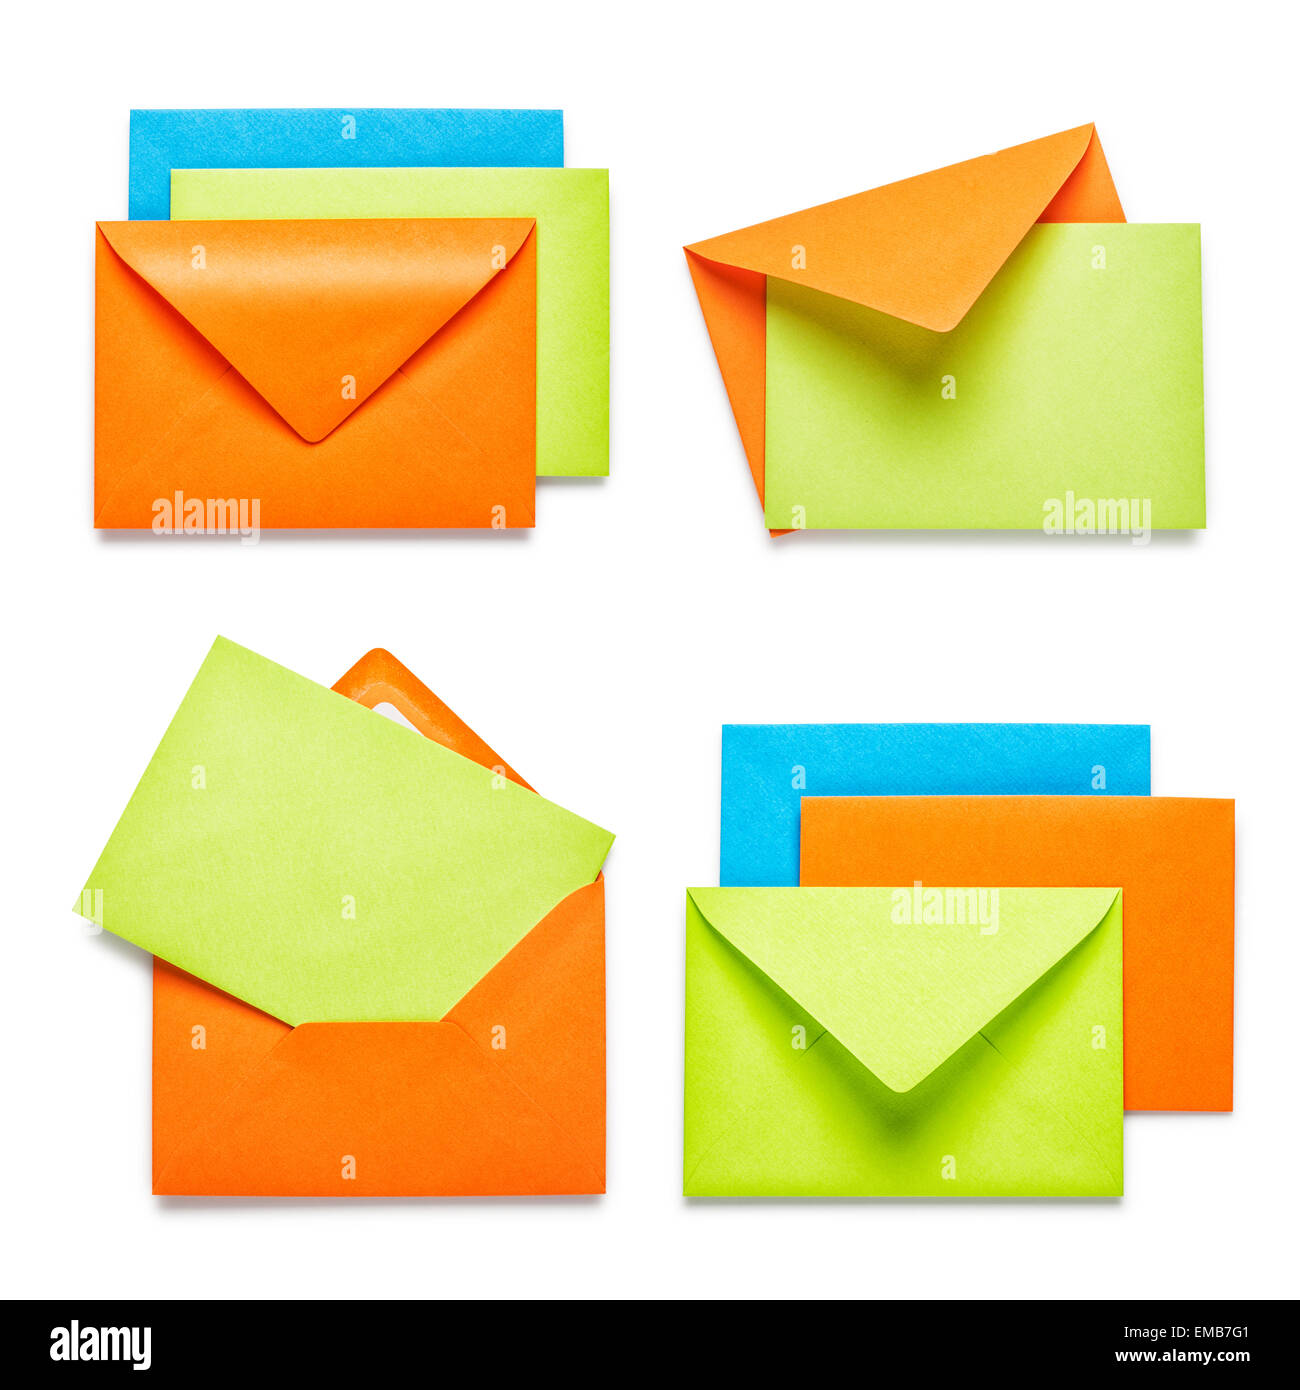 Enveloppes Orange avec green card collection isolé sur fond blanc Banque D'Images